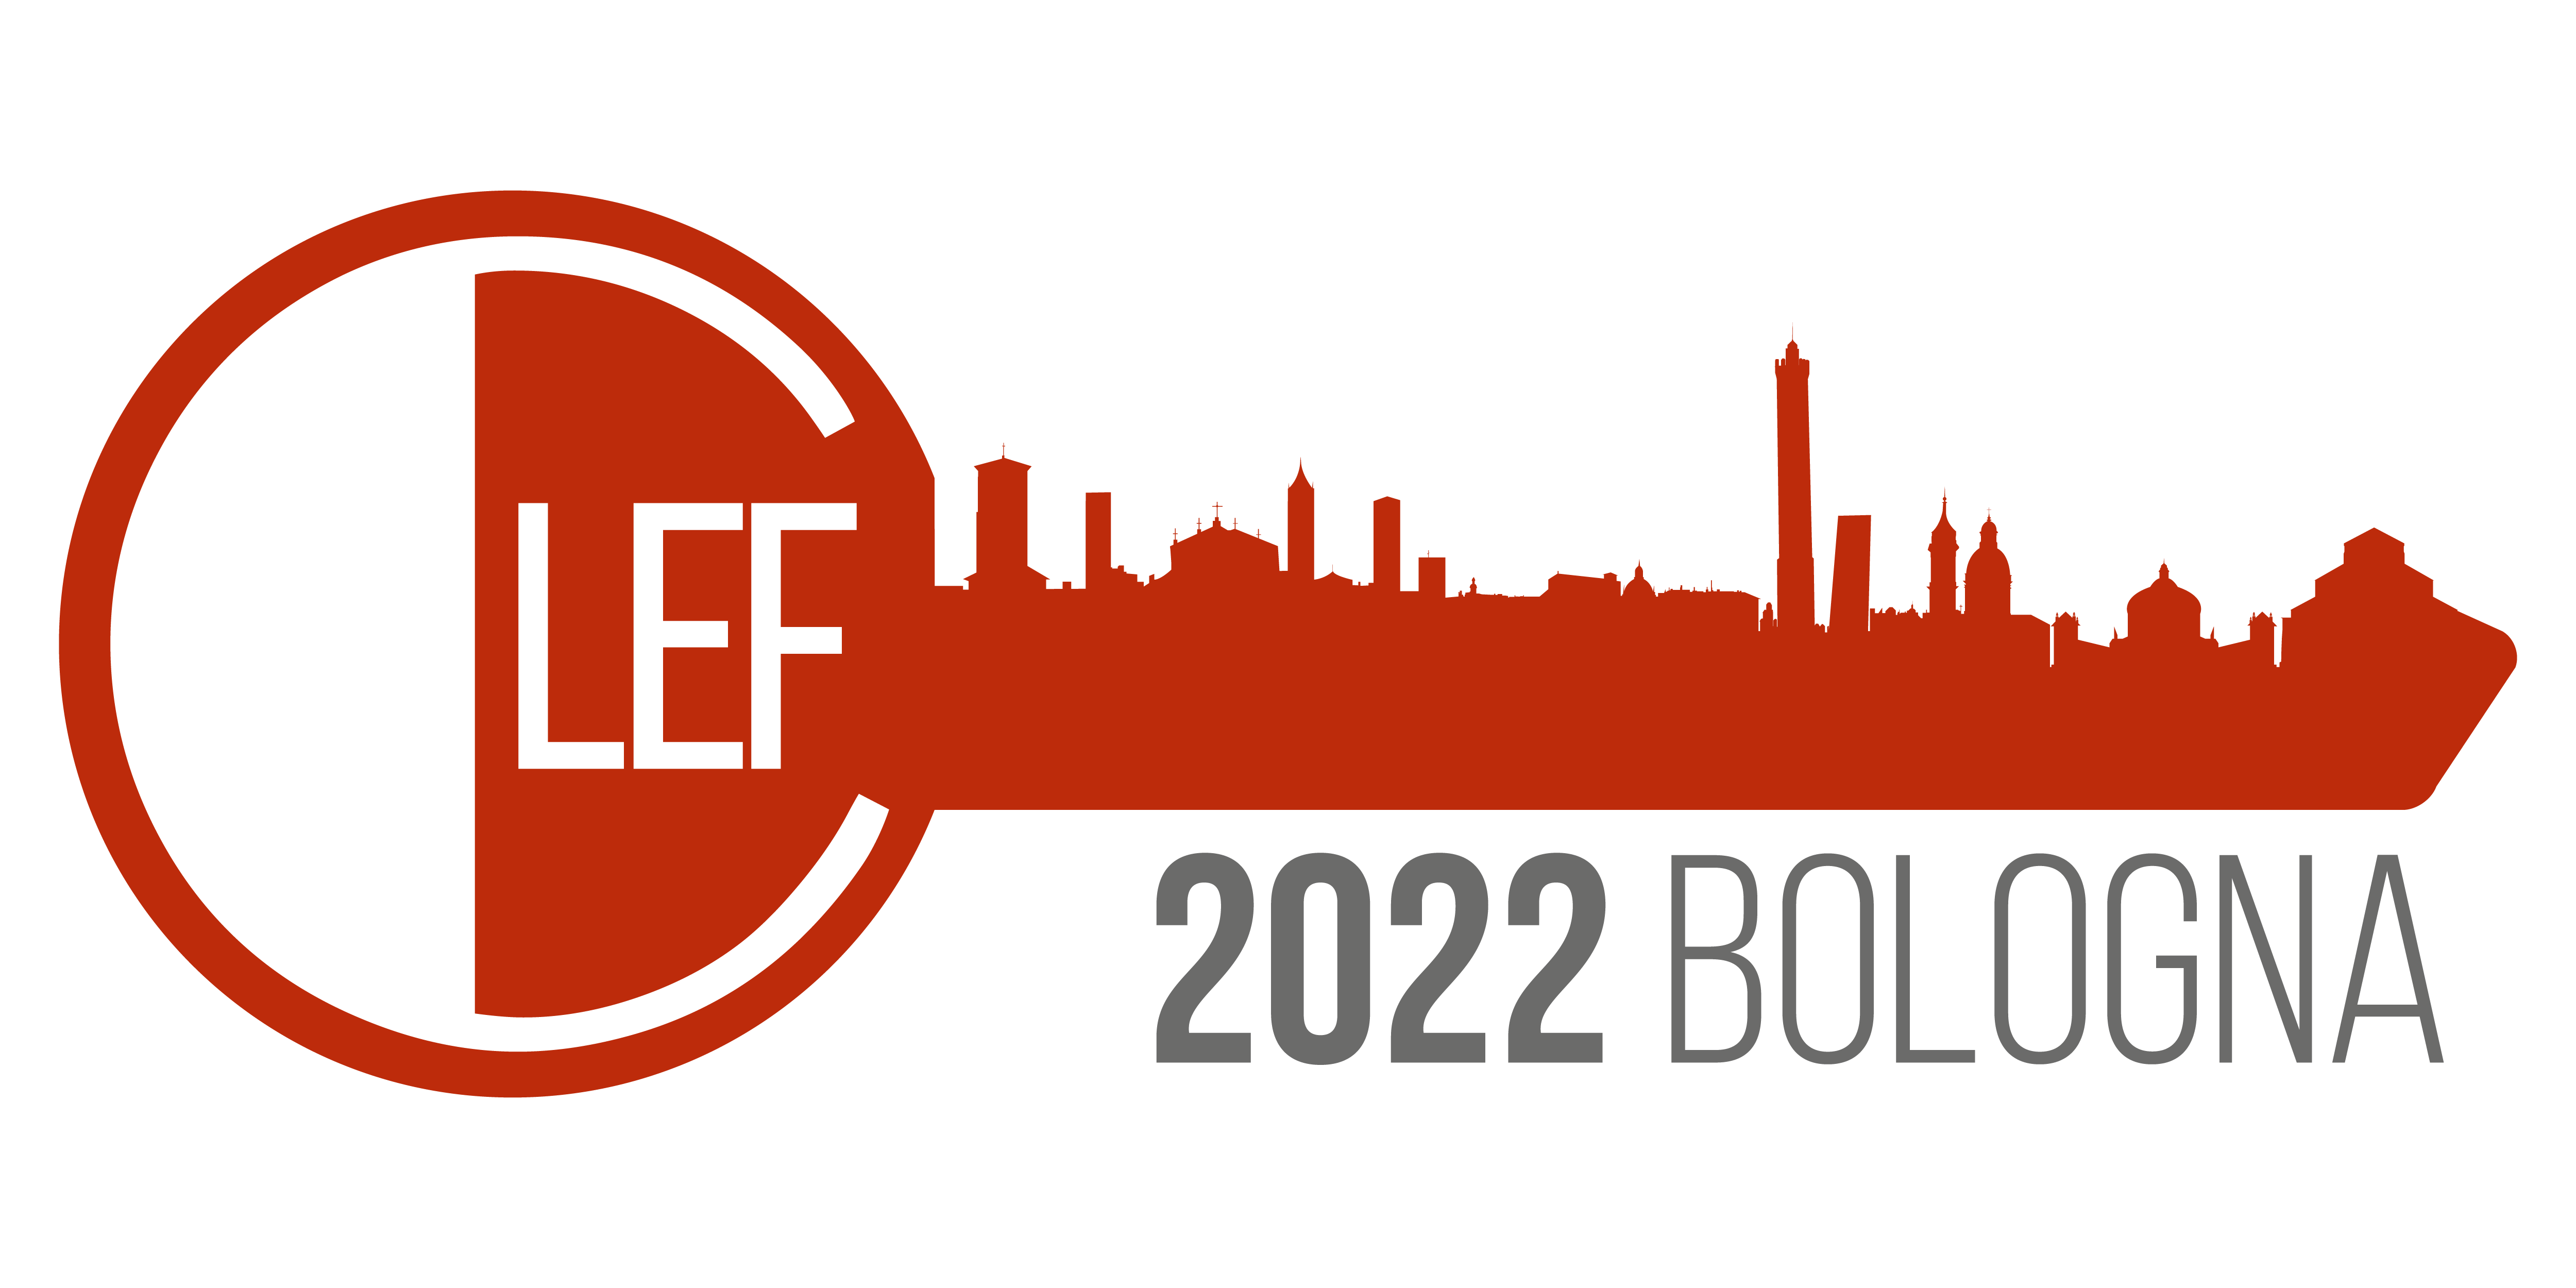 CLEF'22 logo